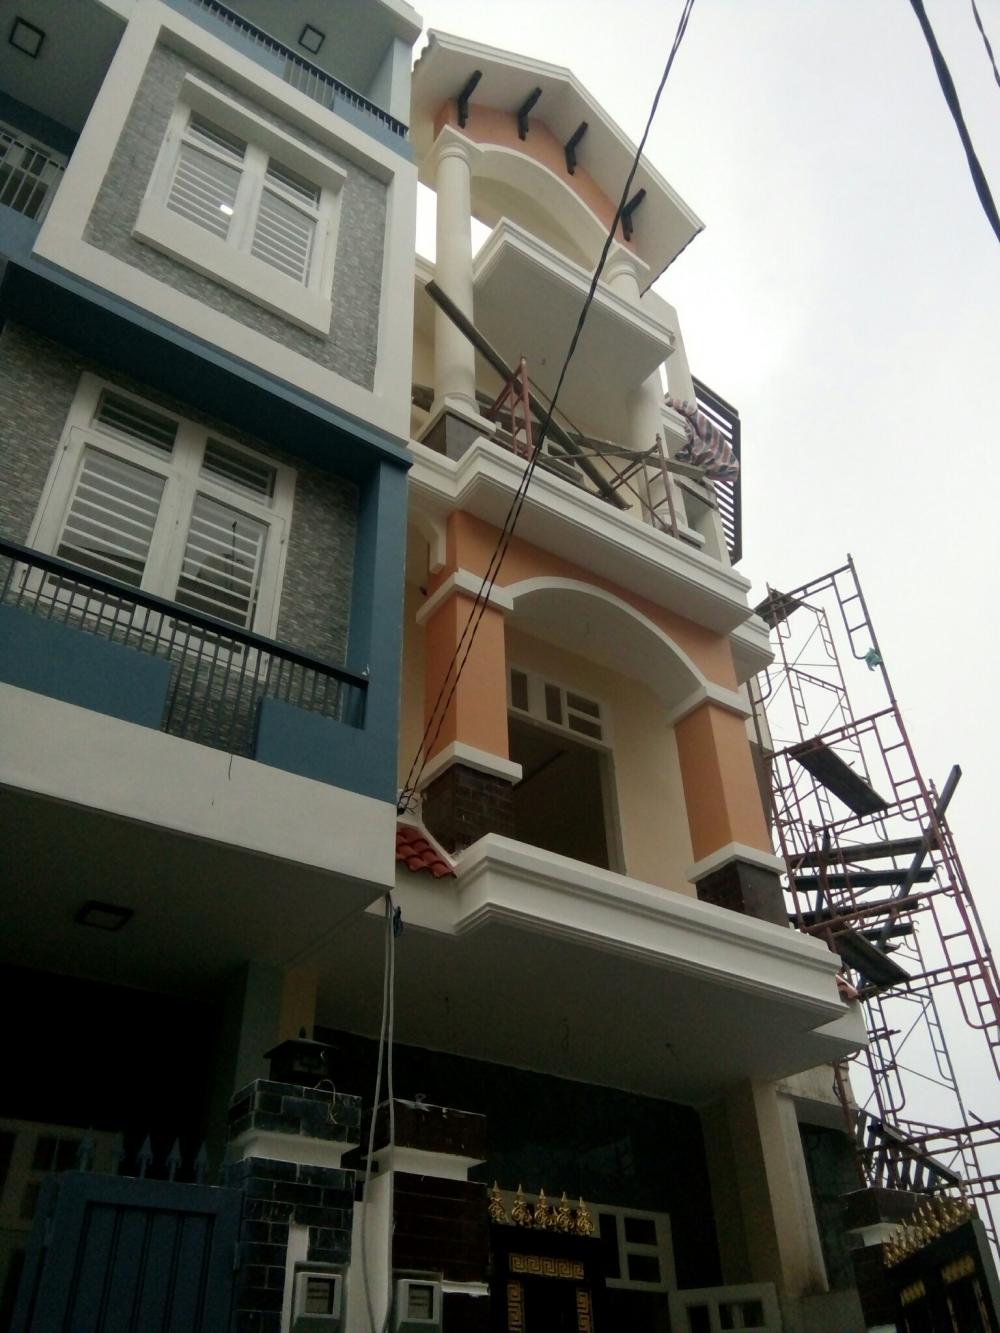 Bán nhà 1 trệt, 2 lầu 56m2, xây kiểu lệch tầng, gần ngã tư Bình Phước, 4 tỷ có hỗ trợ vay 70% giá trị nhà